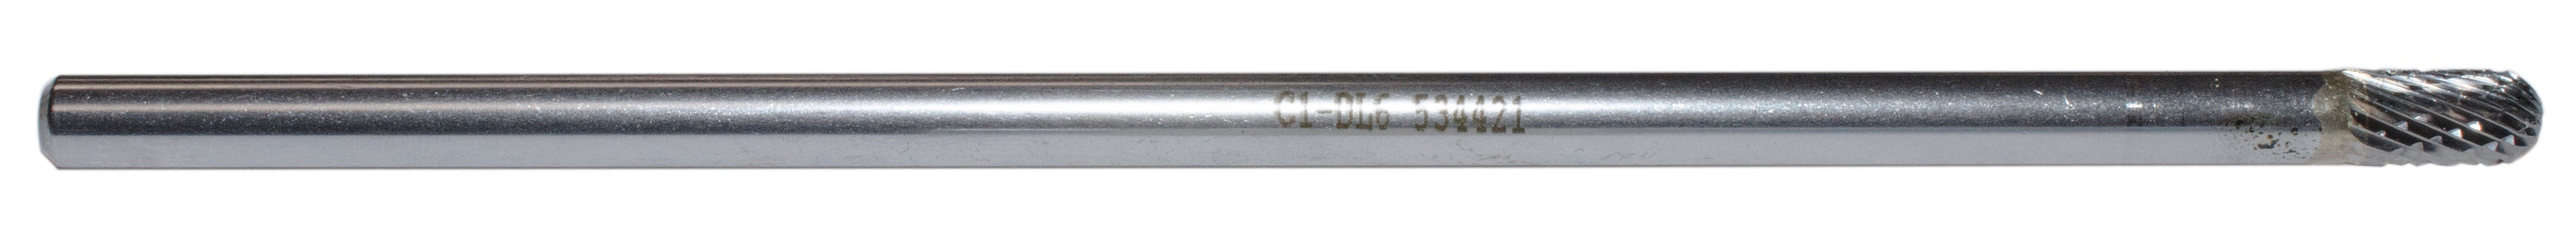 Regular Carbide Burrs Jet C1-DL6 1/4 Inch -Kut Long Shaft Round Nose Shape Burr